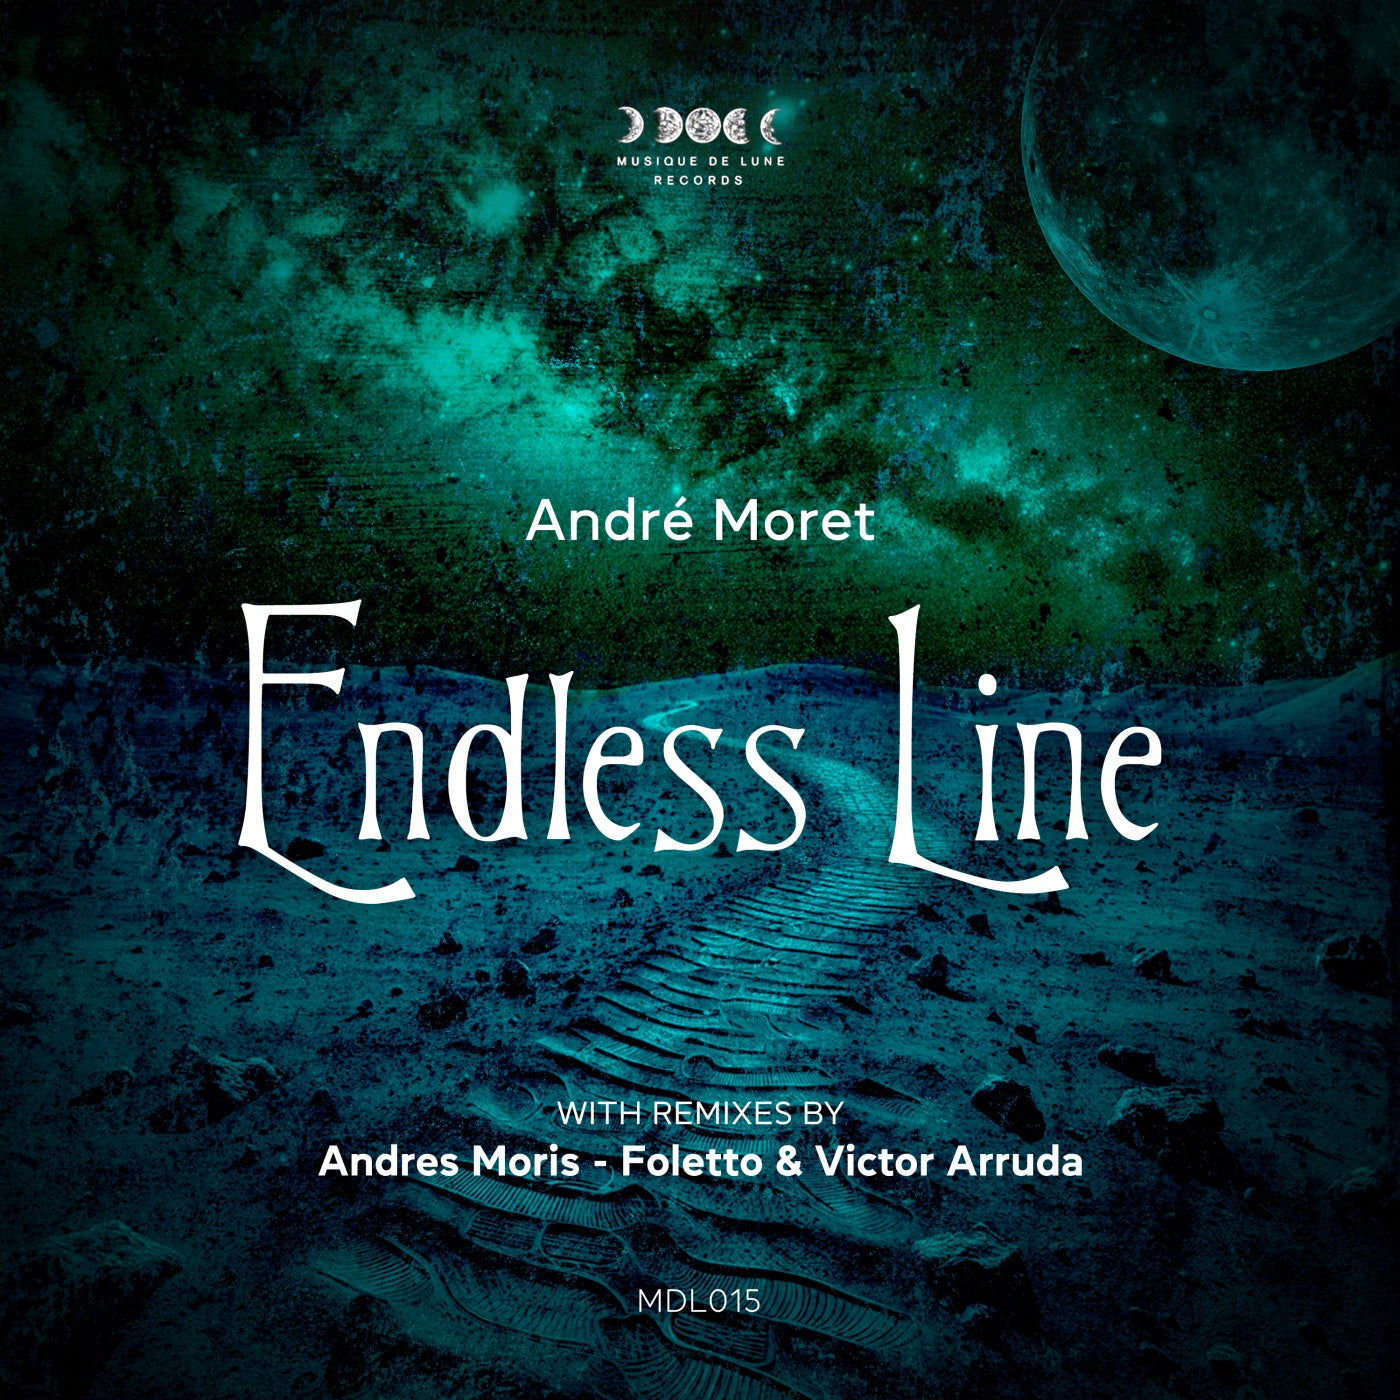 Cover - Andre Moret - Endless Line (Andrés Moris 'The End' Remix)